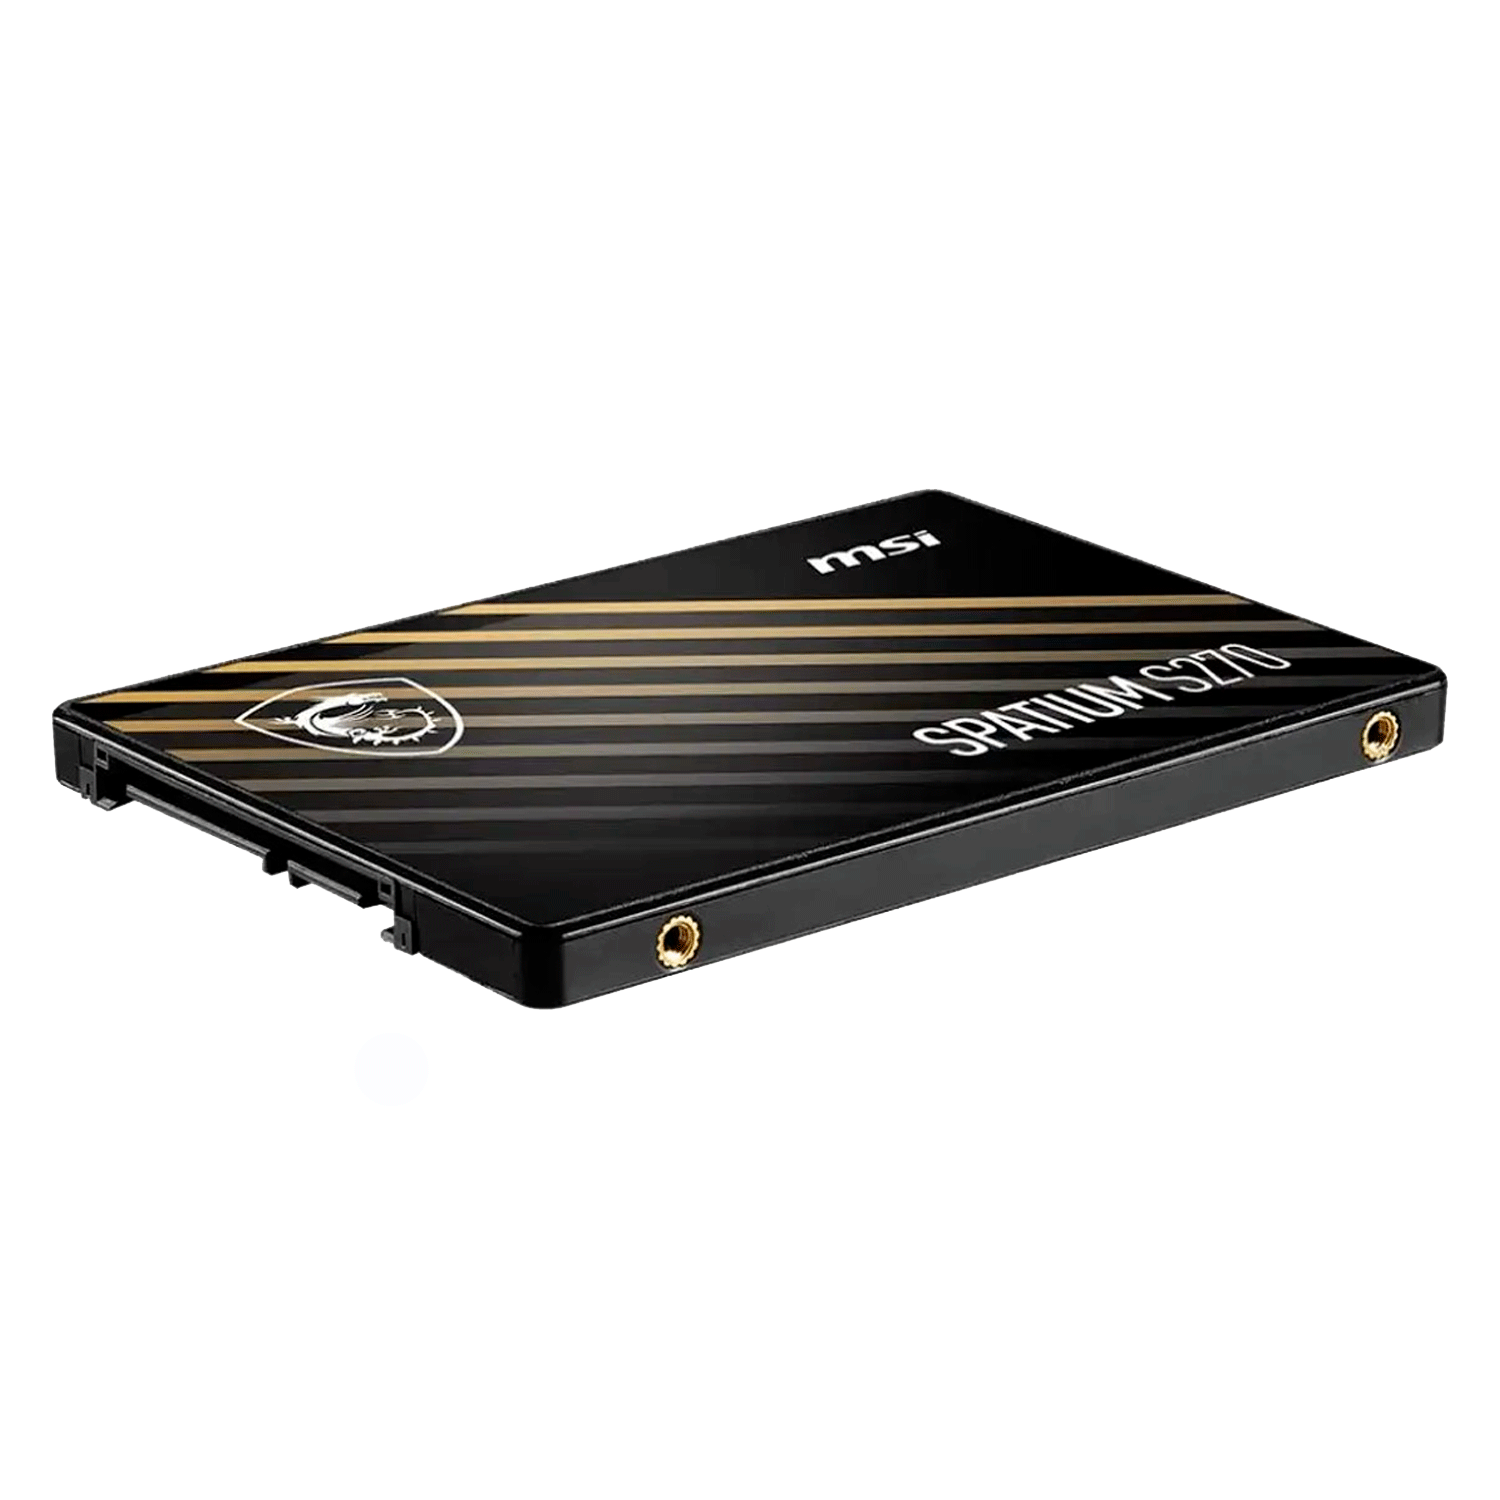 SSD MSI Spatium S270 480GB / 2.5" / SATA3